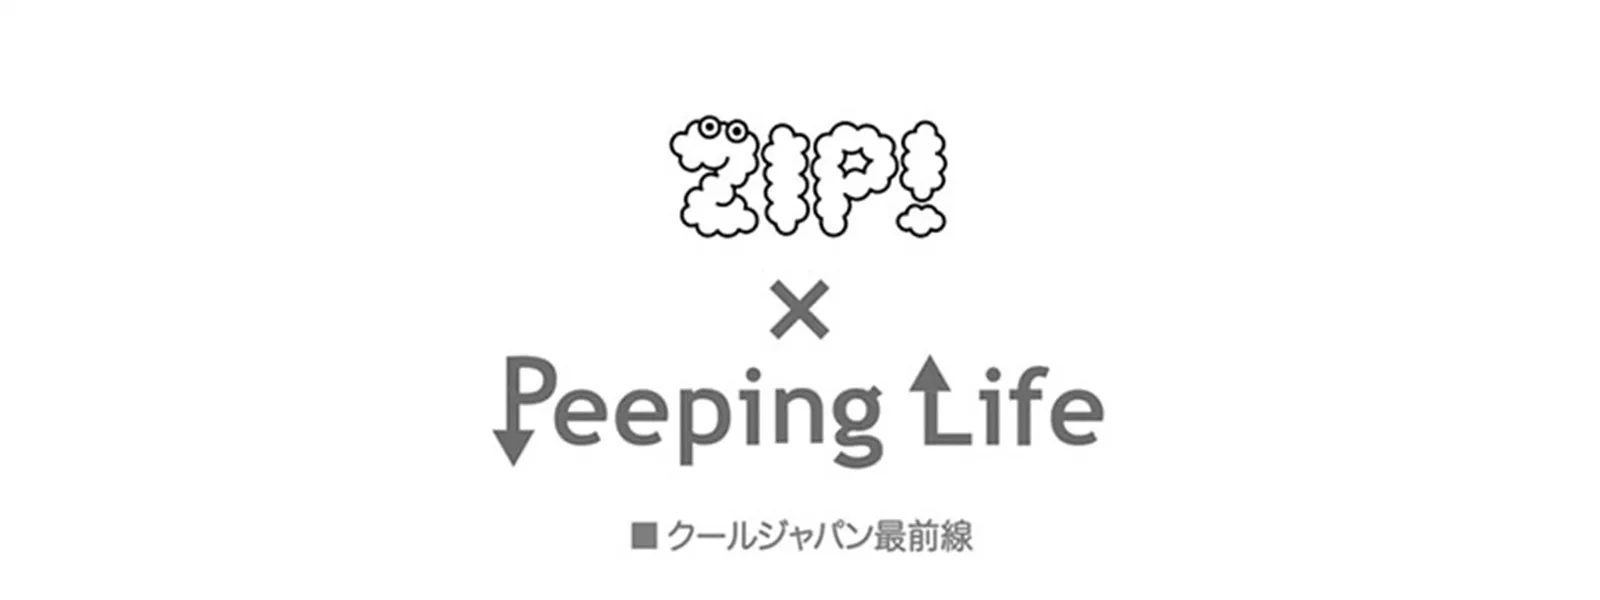 Zip Peeping Life Tv クールジャパン最前線 が見放題 Hulu フールー お試し無料